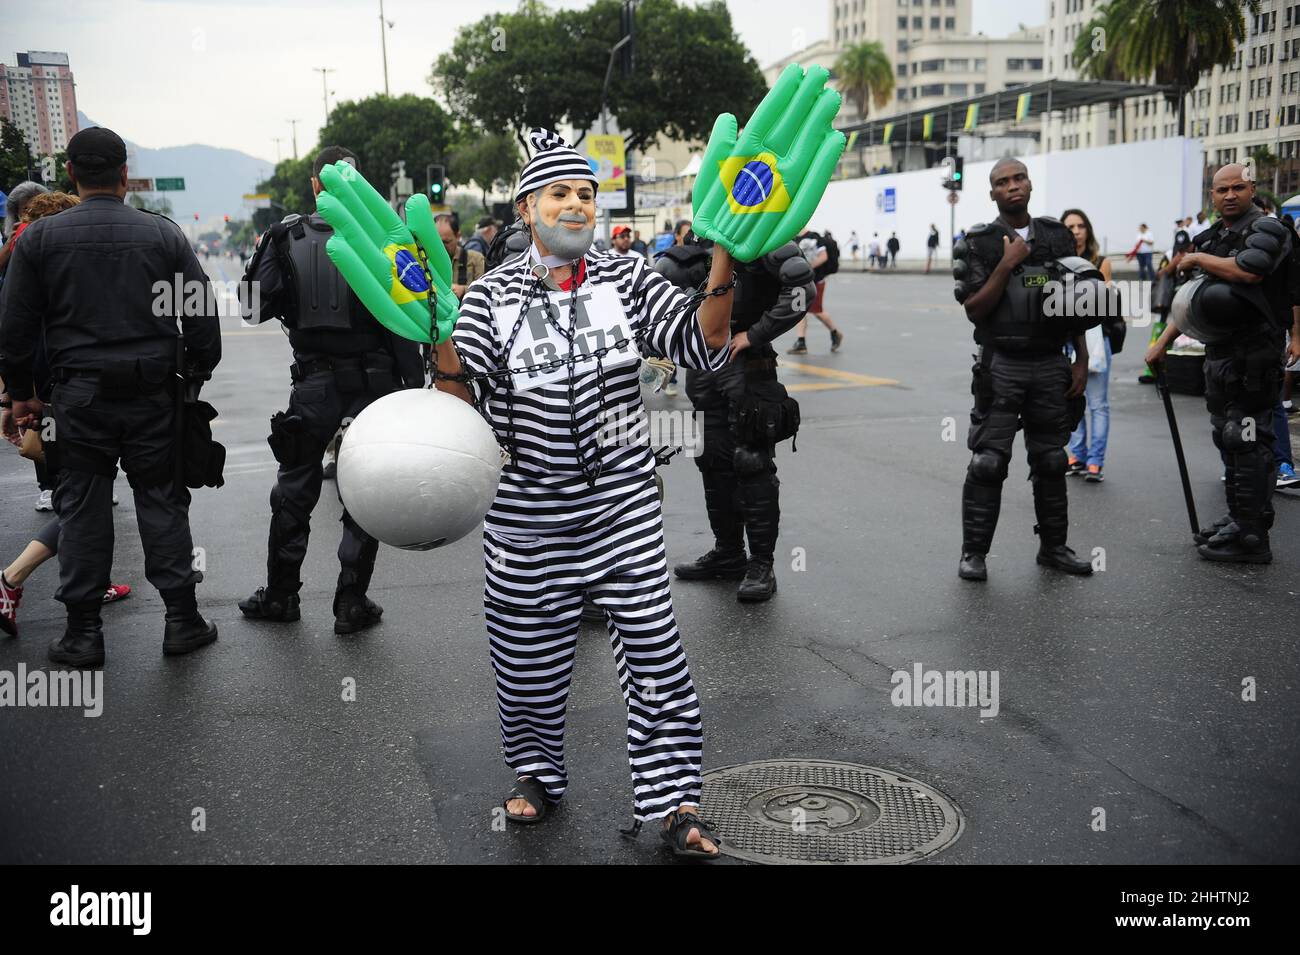 Protestler mit Lula da Silva Präsident Häftlingskostüm am brasilianischen Unabhängigkeitstag. Anhänger der rechtsextremen Partei Stockfoto